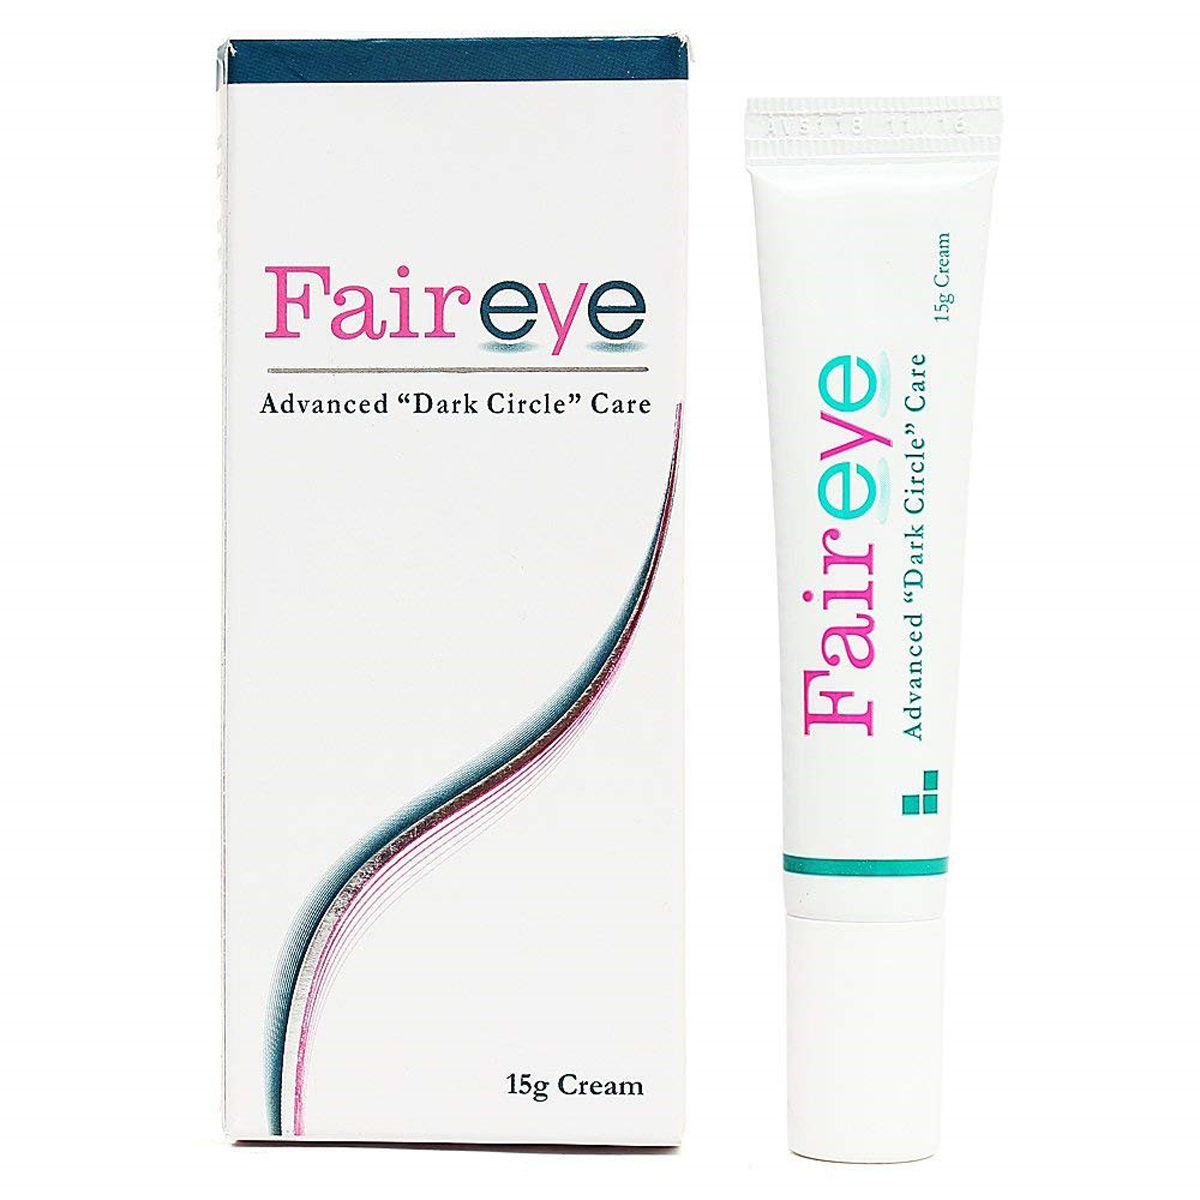 Fair Eye Advanced Dark Circle Care Cream, 15 gm, Pack of 1 